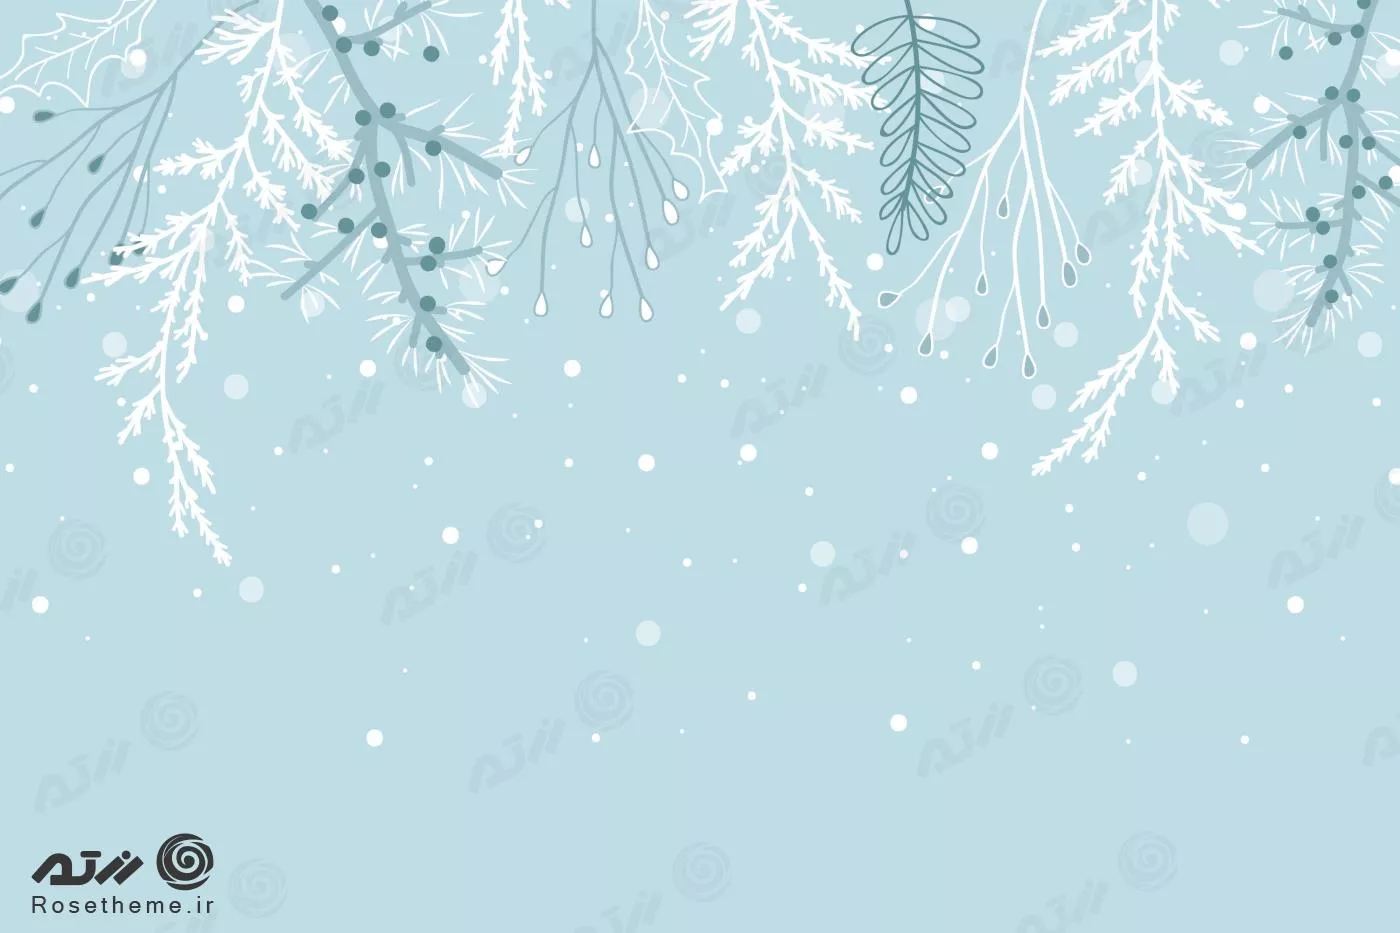 وکتور EPS و Ai لایه باز از زمستان و دانه های برف و جا برای نوشتن مناسب بنر و پوستر  22277